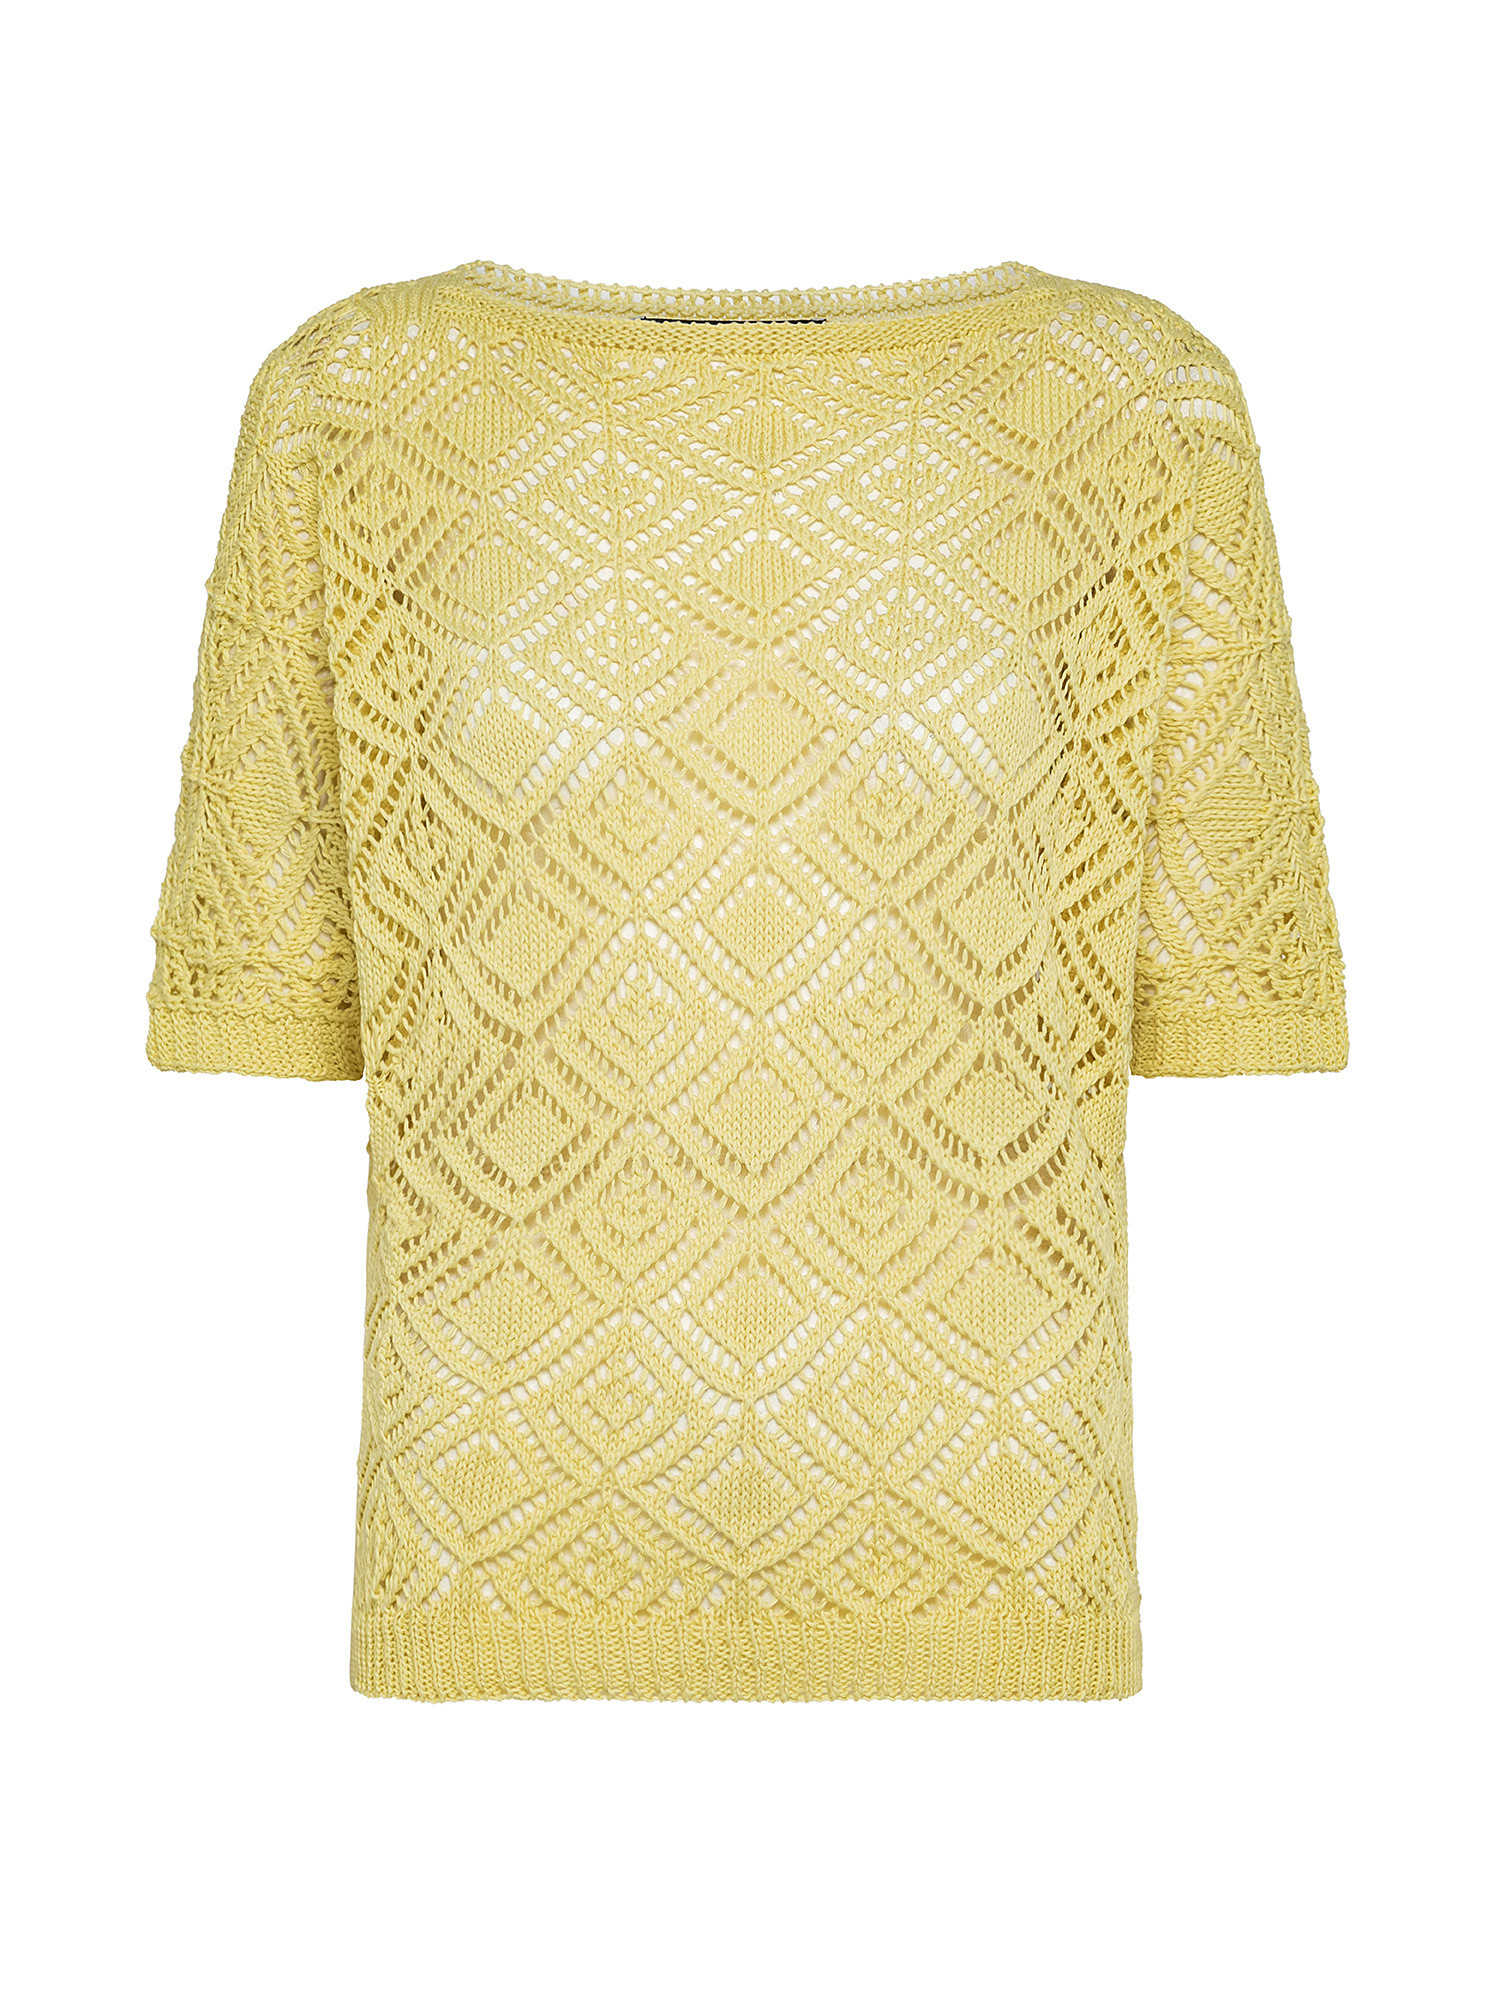 Patterned stitch kimono sweater, Yellow, large image number 0